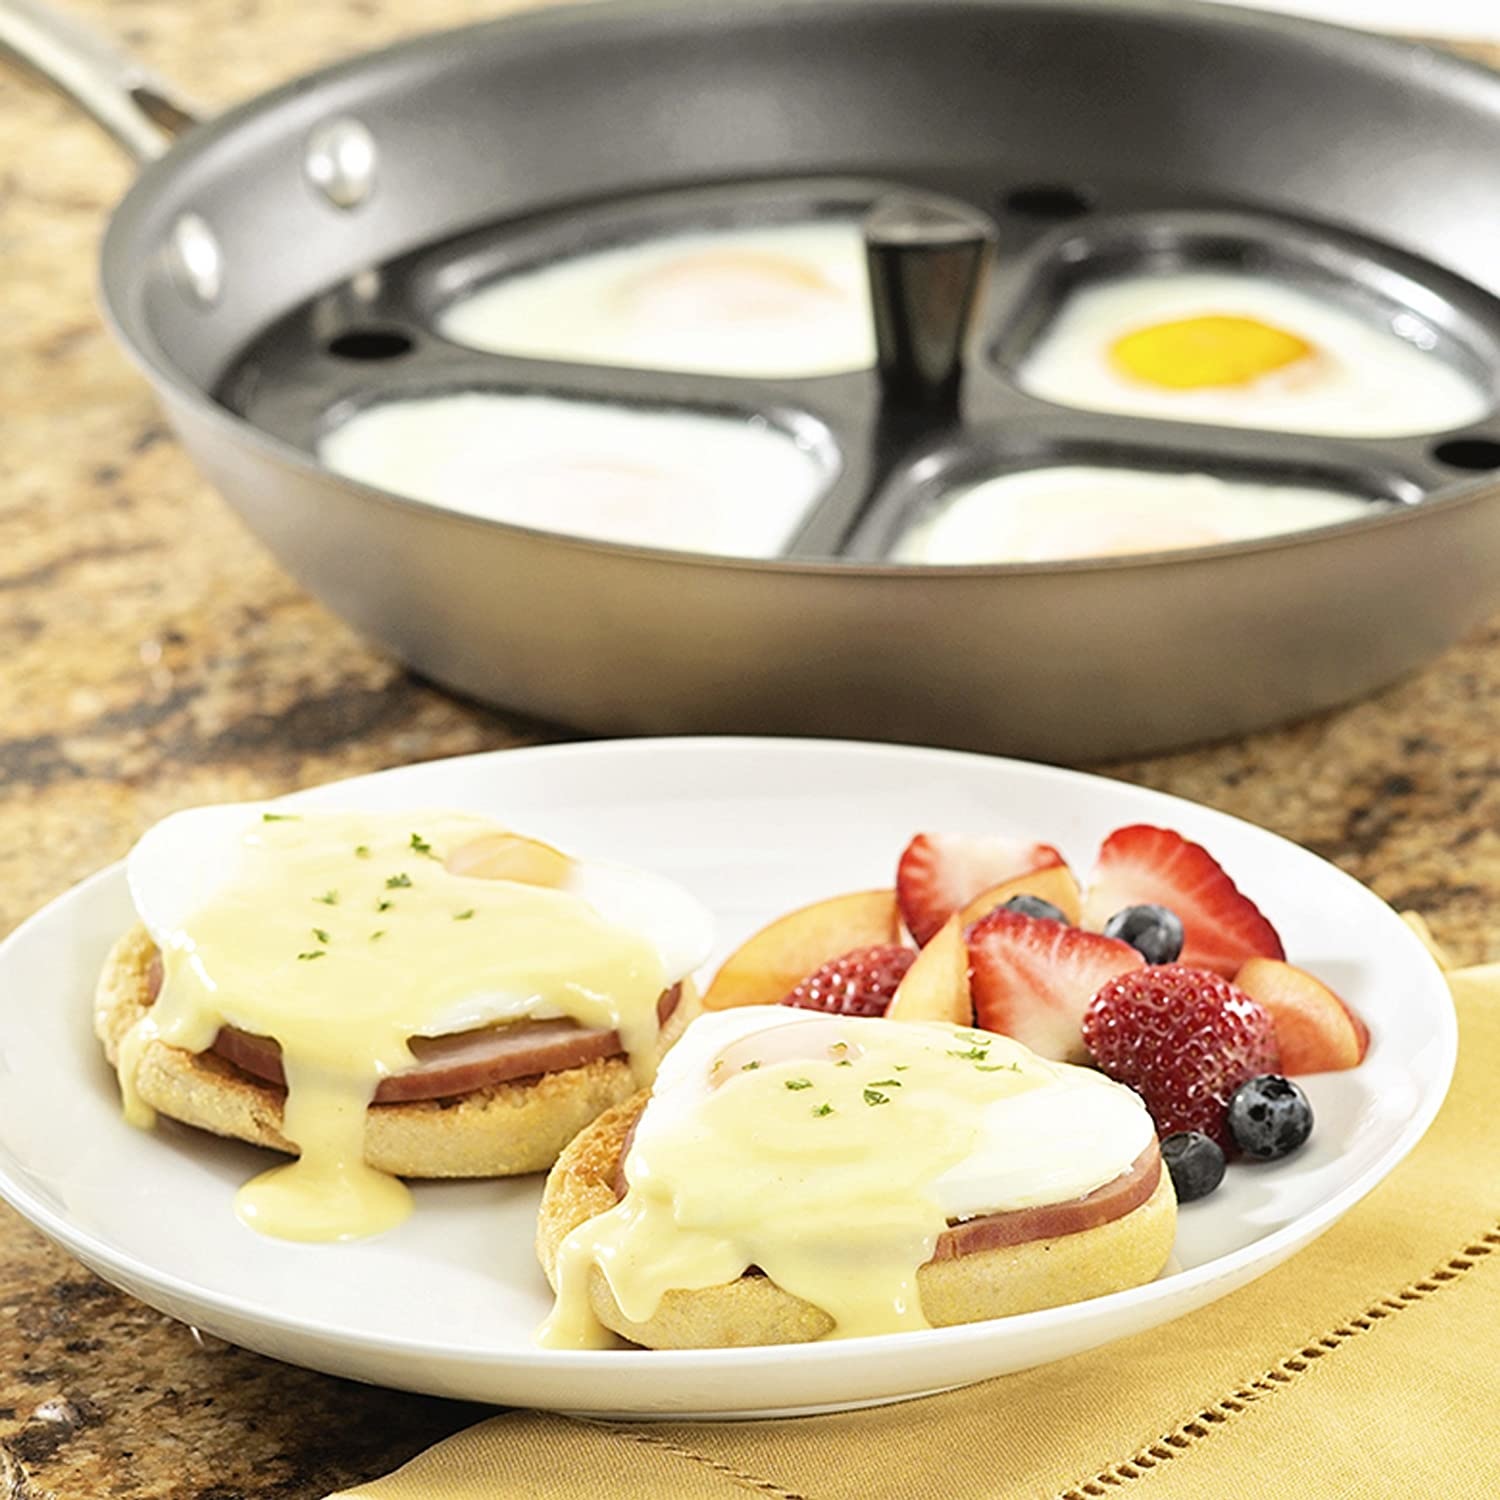 Eggssentials oeufs pochés - 4 tasses antiadhésives pour pocher les œufs -  poêle à œufs en acier inoxydable certifiée FDA et qualité alimentaire PFOA  avec spatule gratuite : : Cuisine et Maison